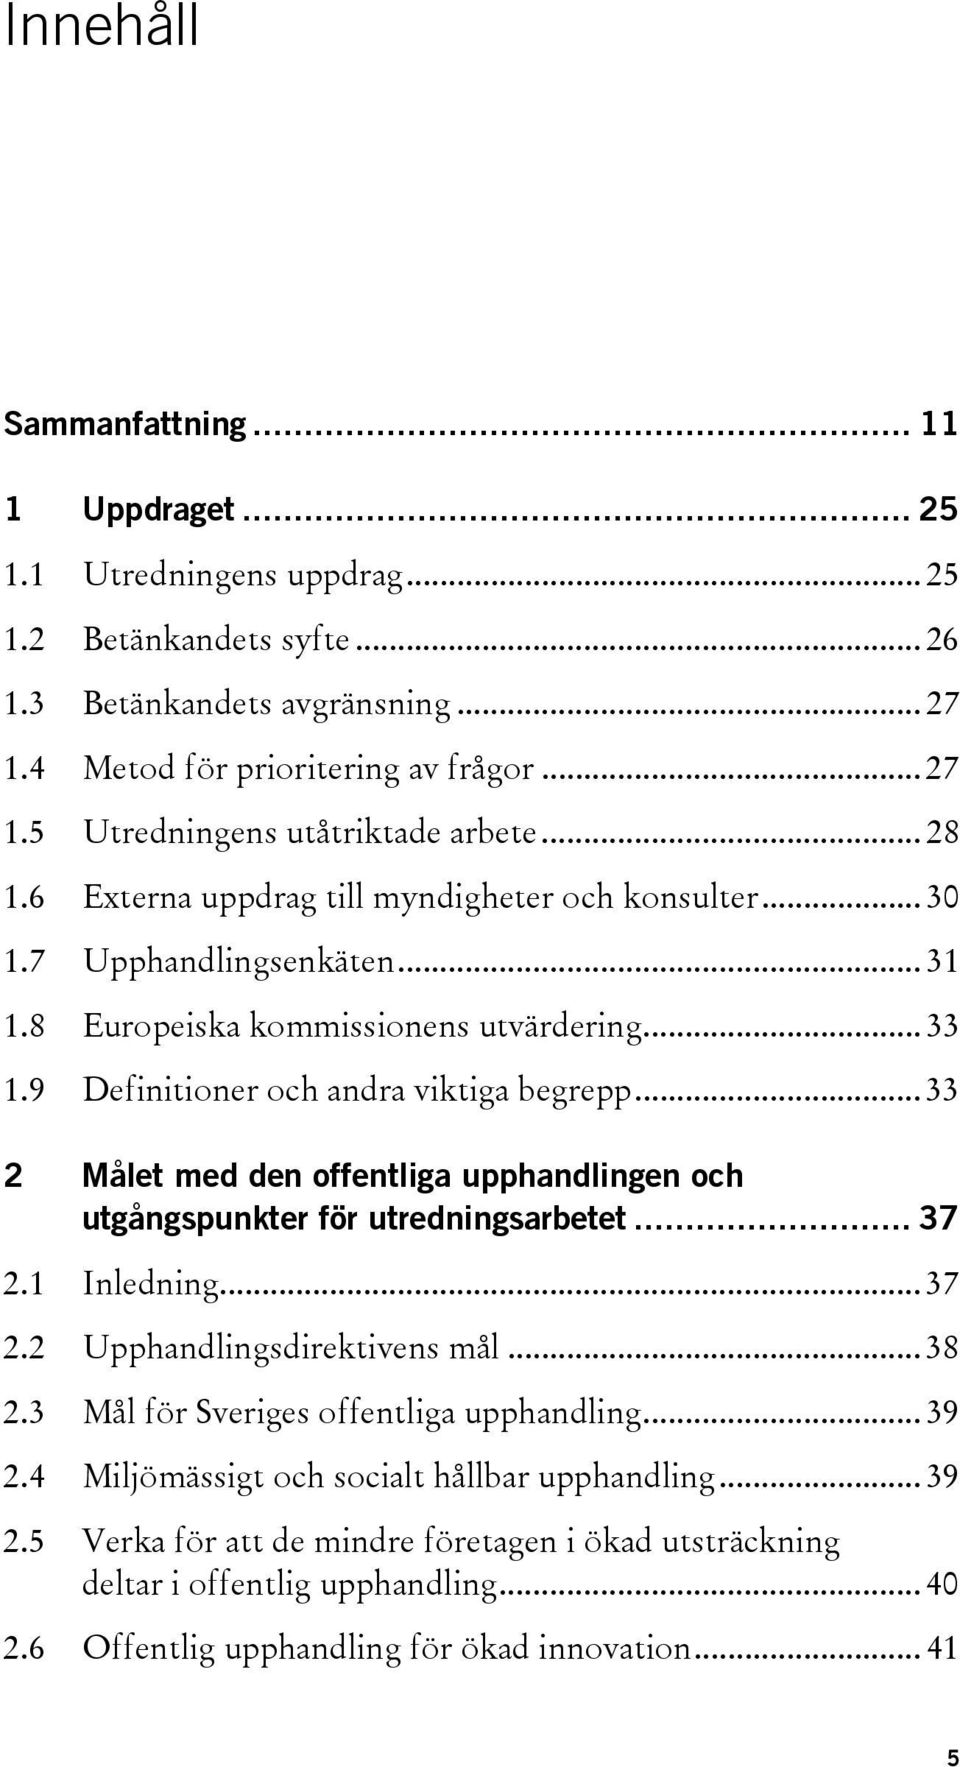 .. 33 2 Målet med den offentliga upphandlingen och utgångspunkter för utredningsarbetet... 37 2.1 Inledning... 37 2.2 Upphandlingsdirektivens mål... 38 2.3 Mål för Sveriges offentliga upphandling.